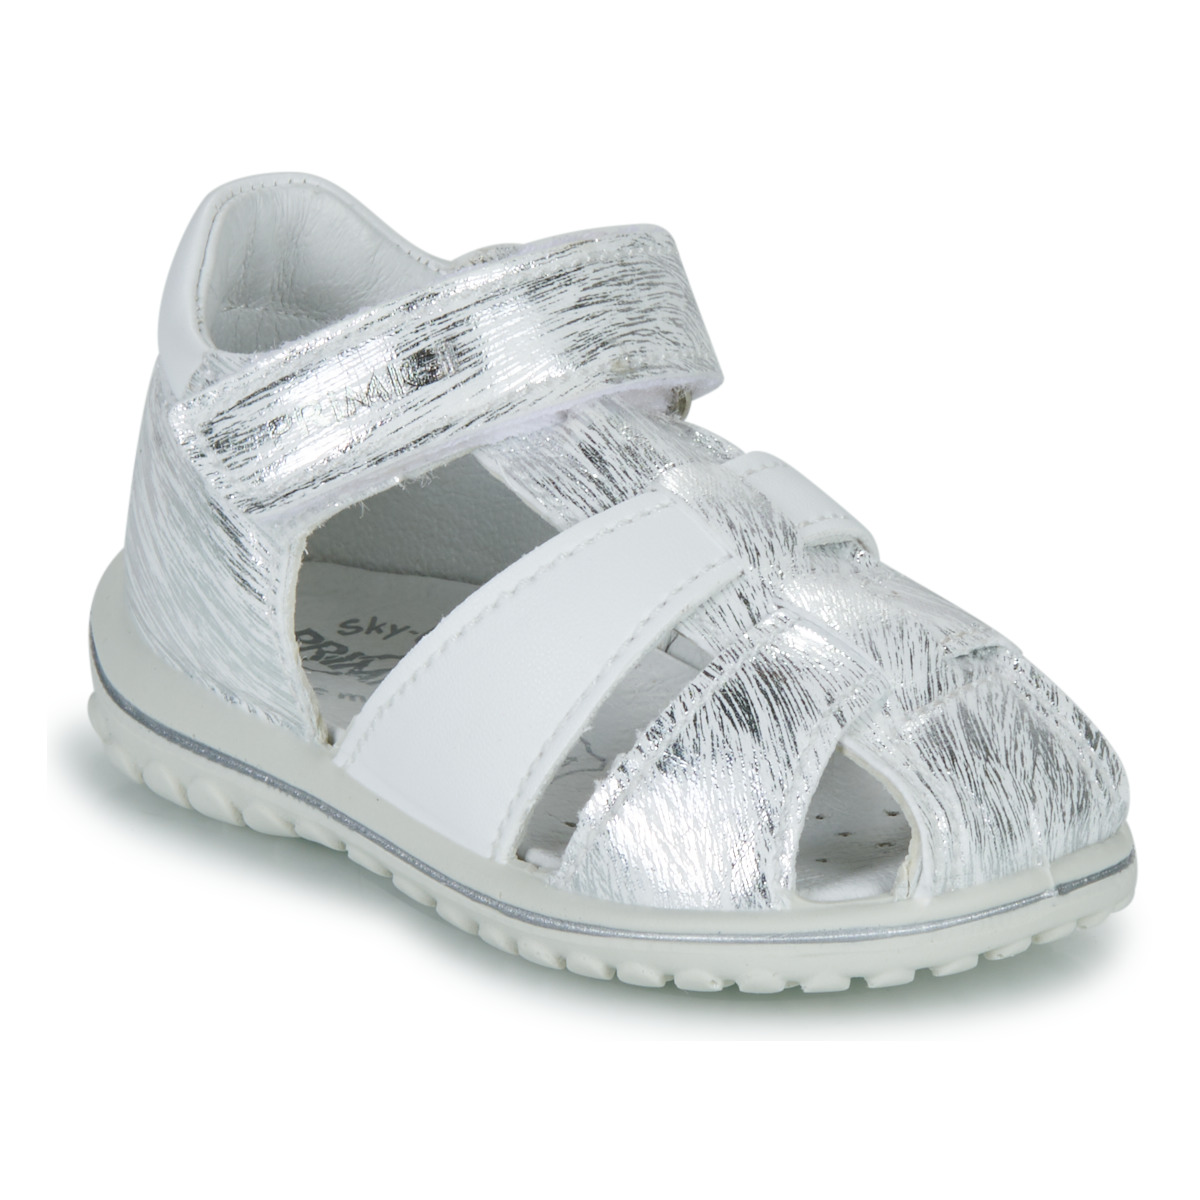 鞋子 女孩 凉鞋 Primigi BABY SWEET 白色 / 银灰色